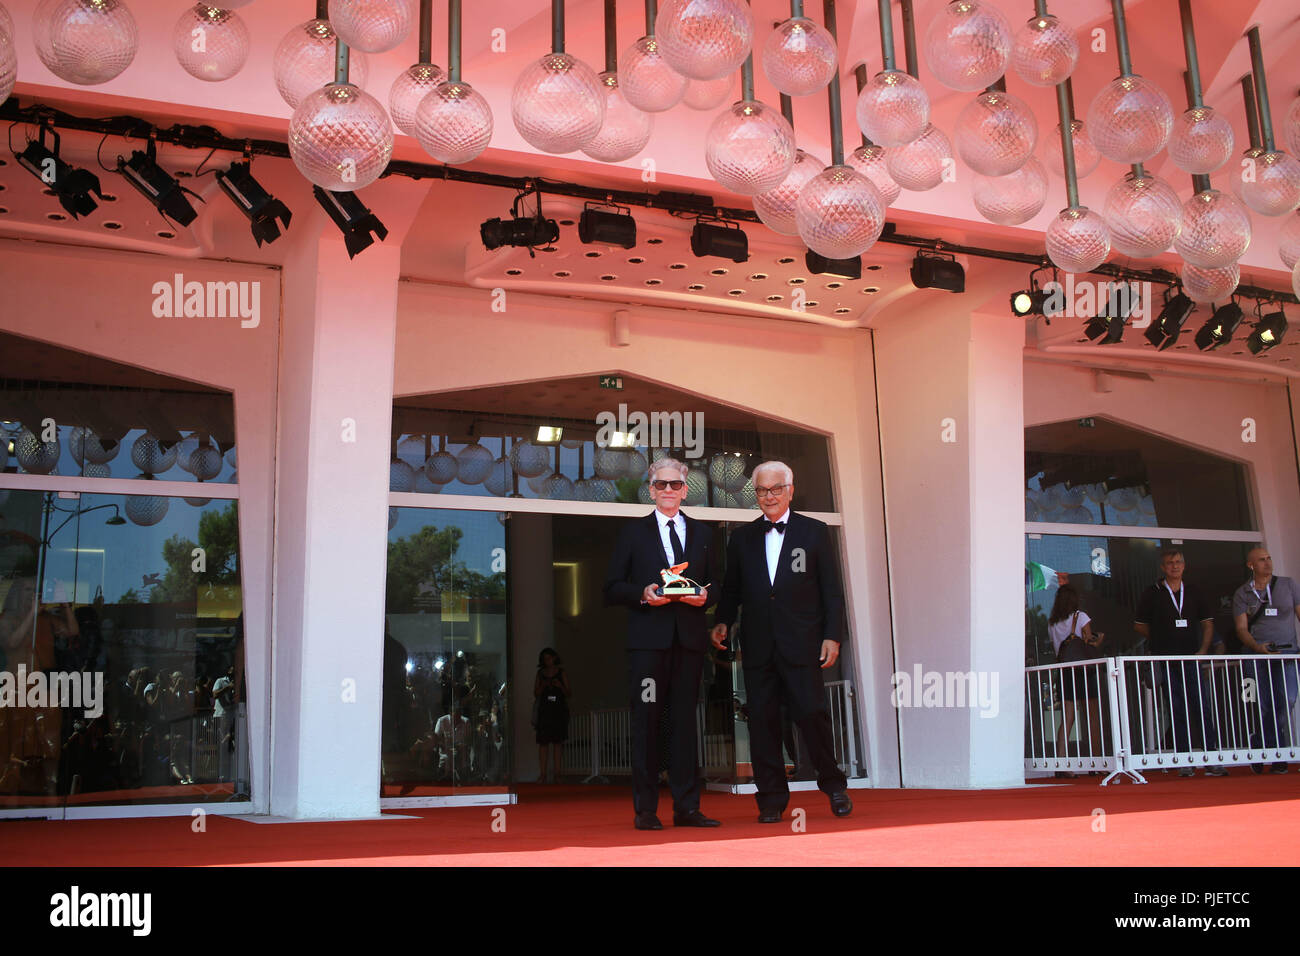 L'Europe, Italie, Lido di Venezia, 06, septembre 2018 : David Cronenberg, Lion d'or pour l'ensemble de sa carrière, le 75e Festival International du Film de Venise 2018 Photo © Ottavia Da Re/Sintesi/Alamy Live News Banque D'Images